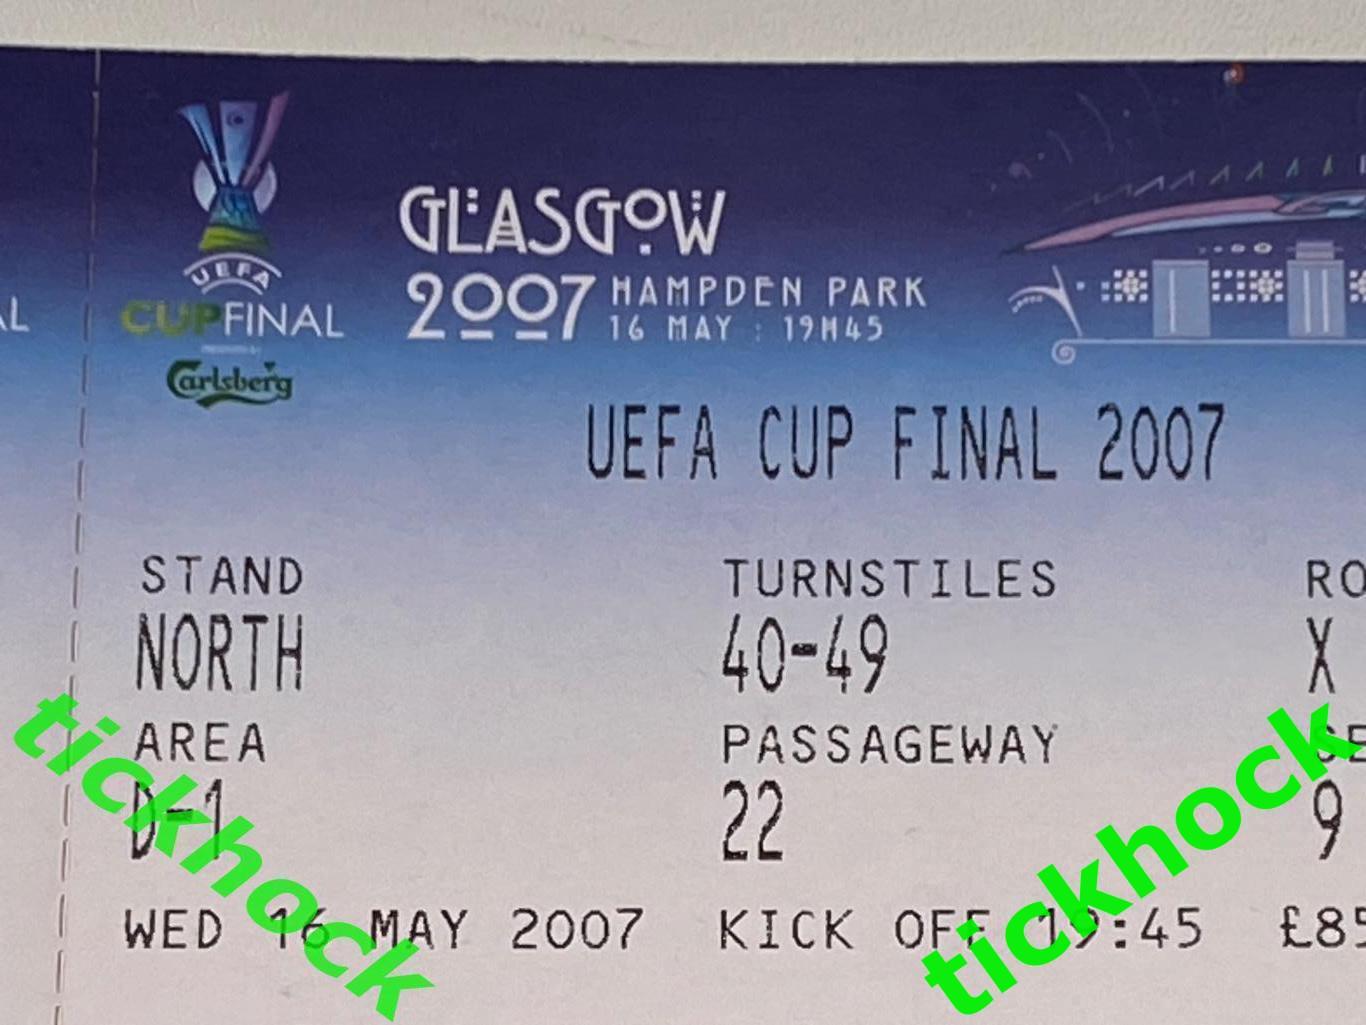 Кубок УЕФА 2007 финал // Эспаньол - Севилья __16 мая в Глазго